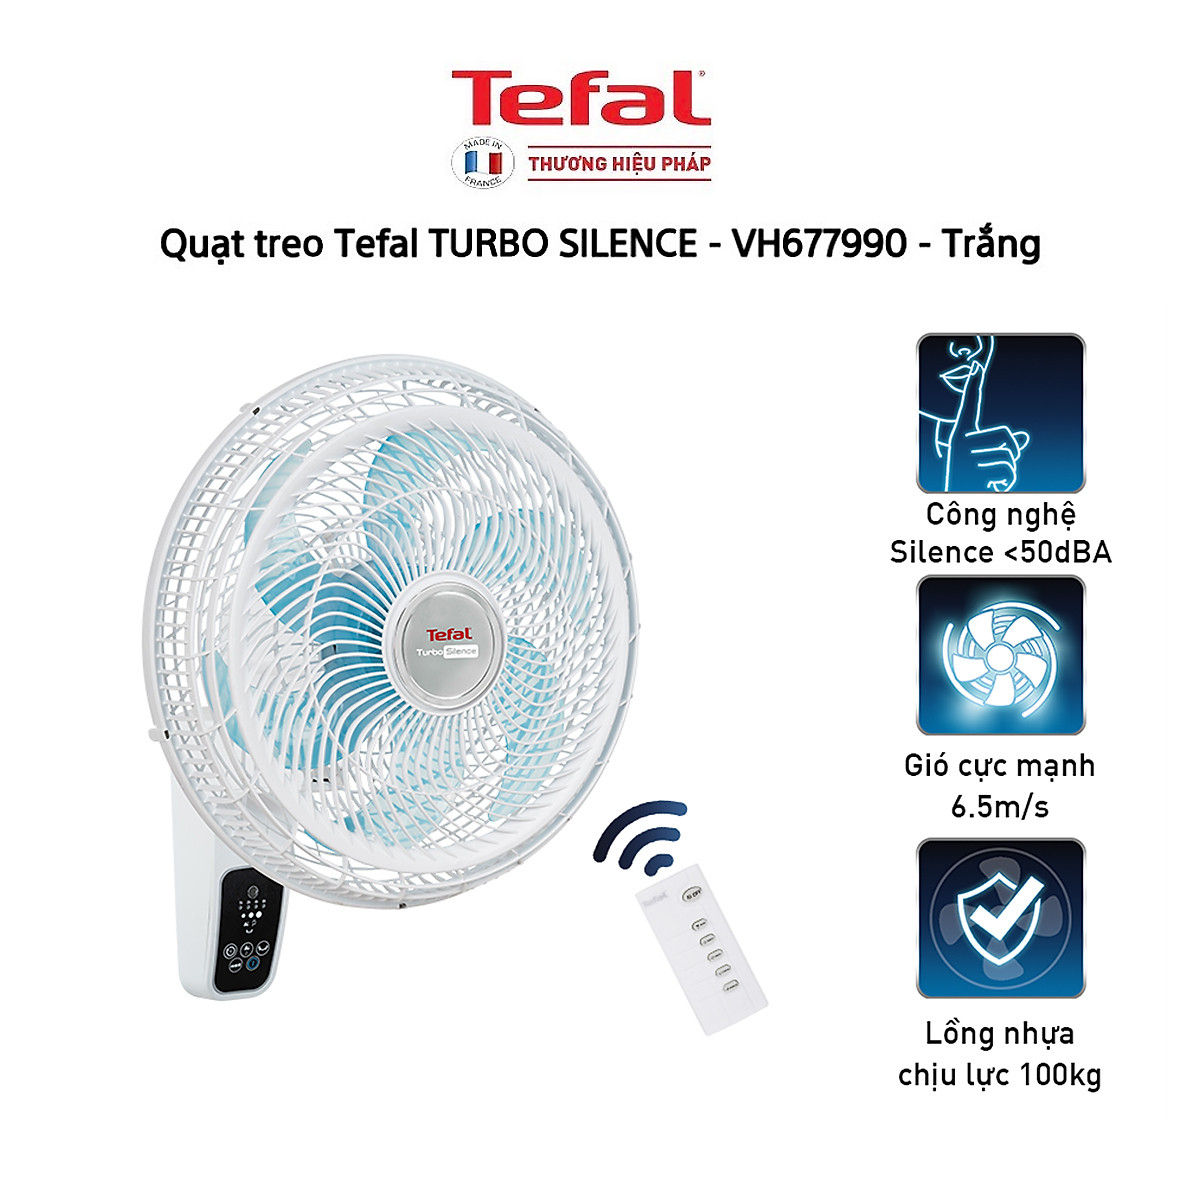 Quạt treo tường Tefal Turbo Silence VH677990 công suất 80W có khiển